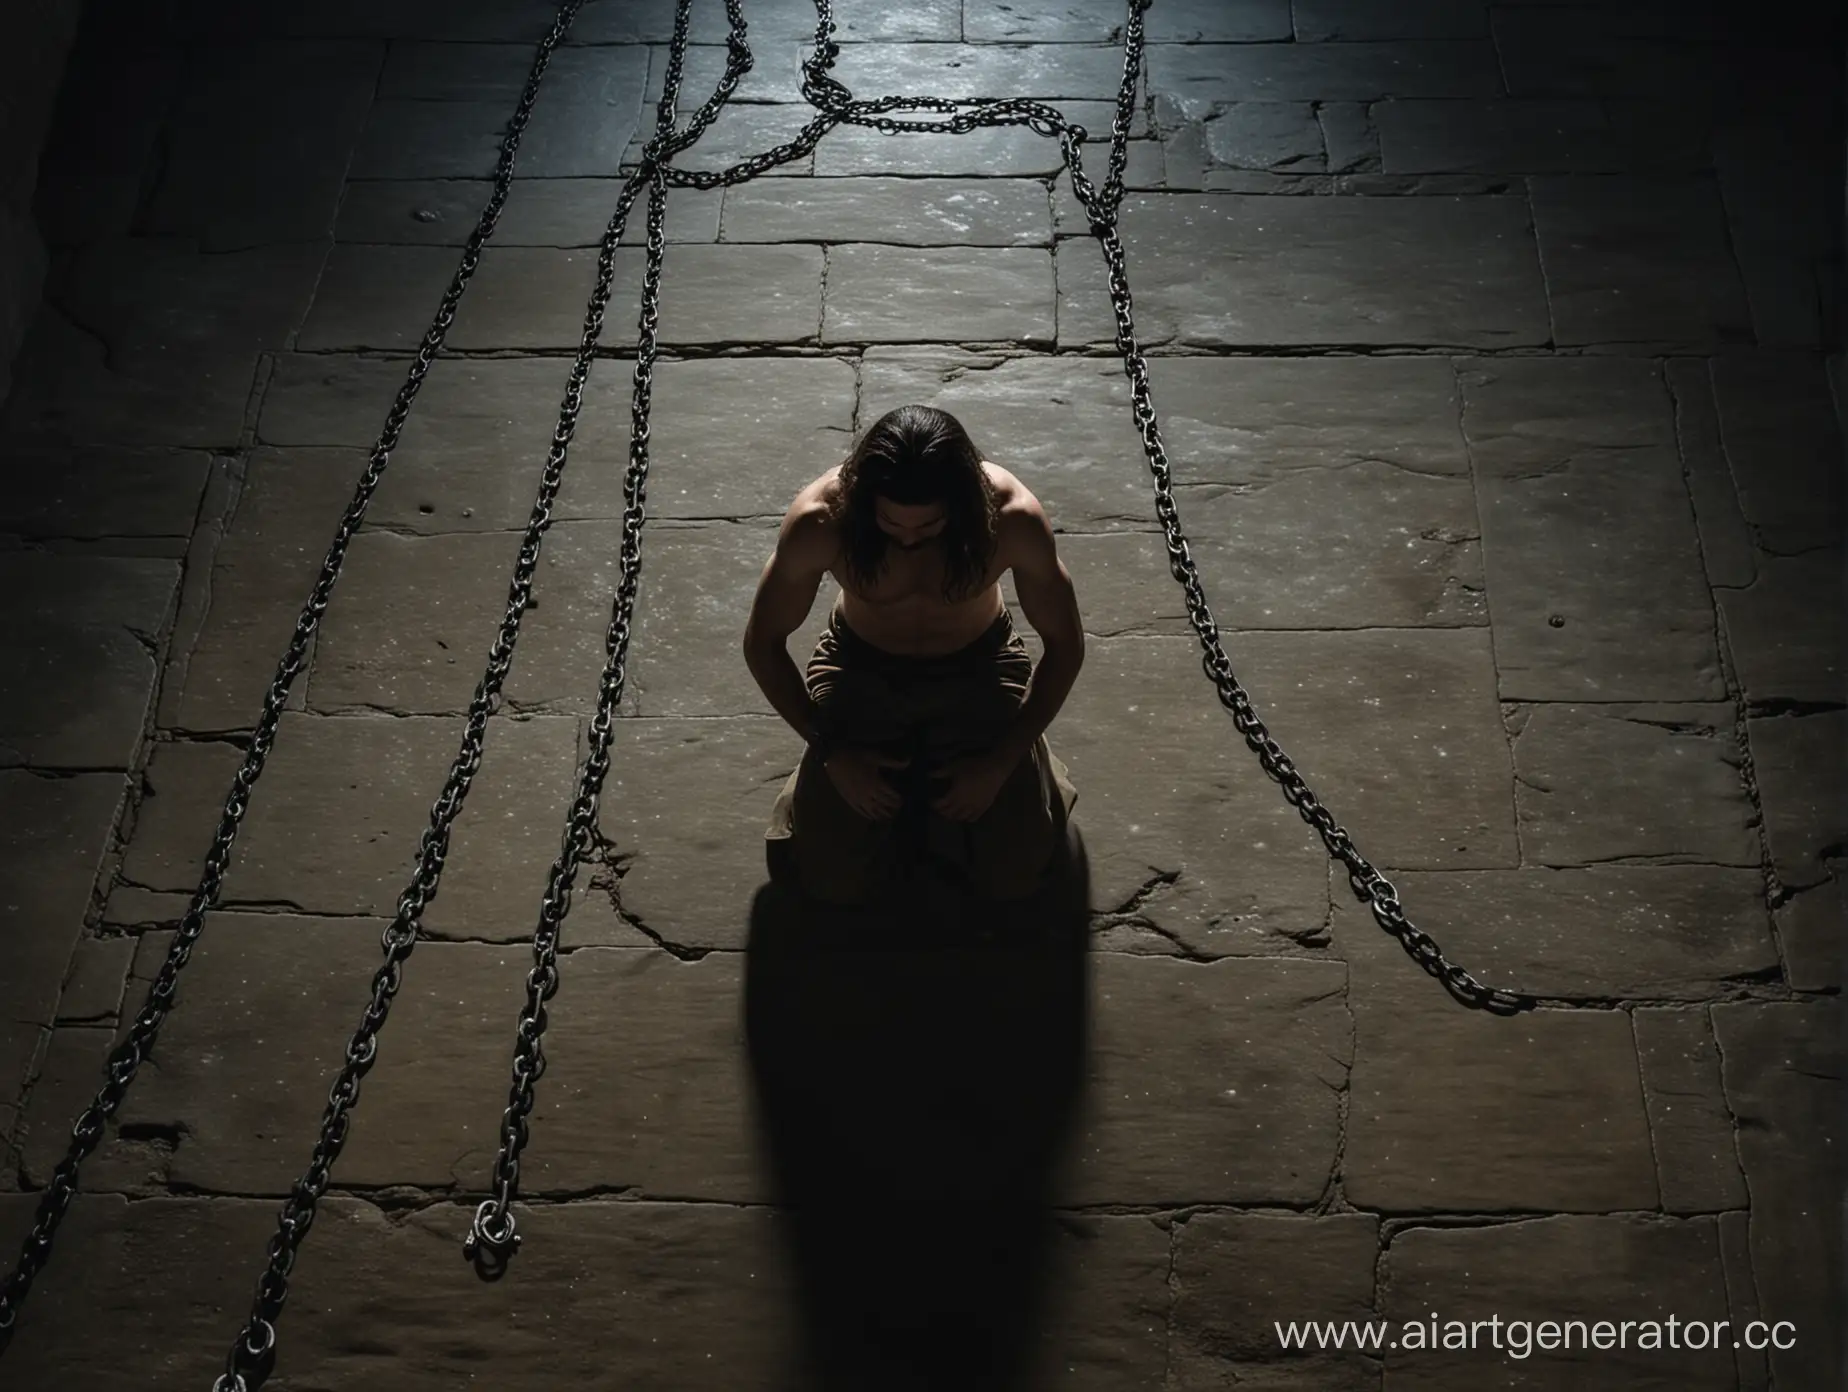 Moonlit-Dungeon-Kneeling-Prisoner-in-Chains